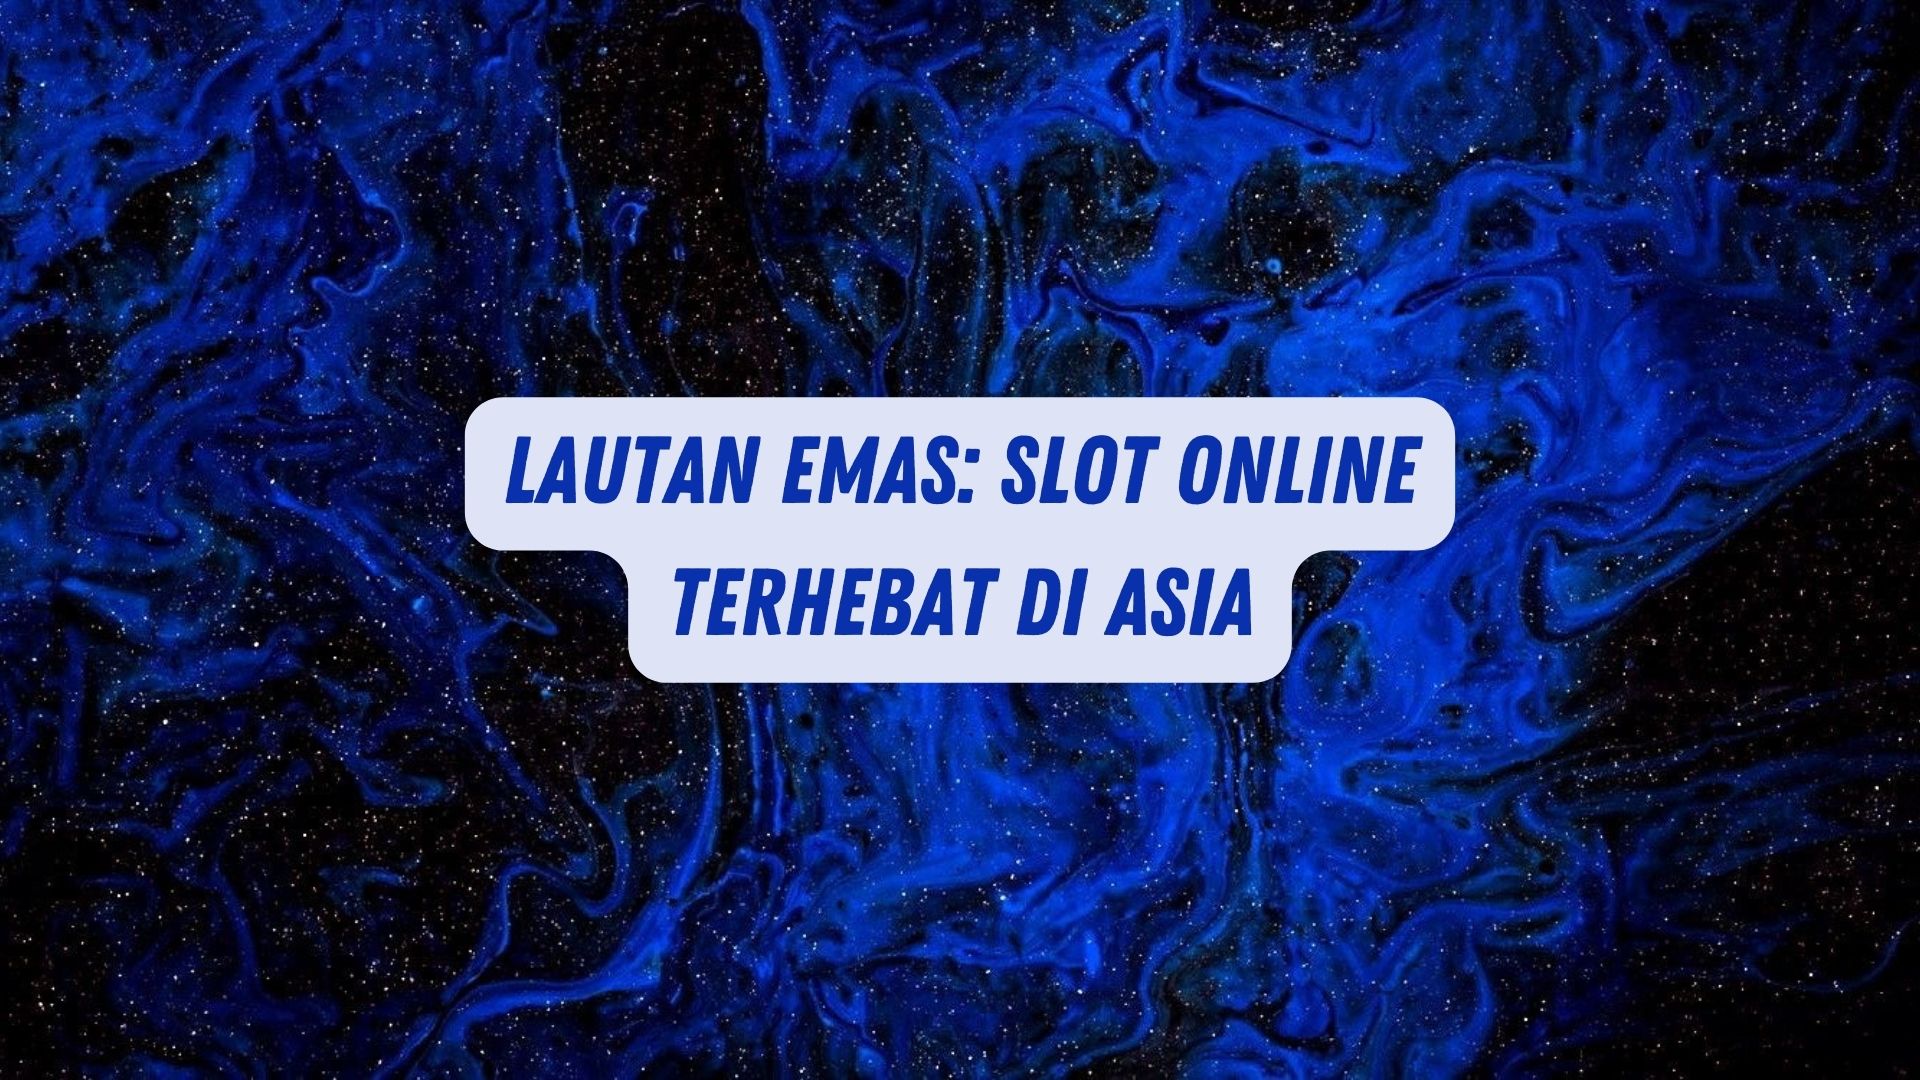 Lautan Emas: Game Online Terhebat di Asia